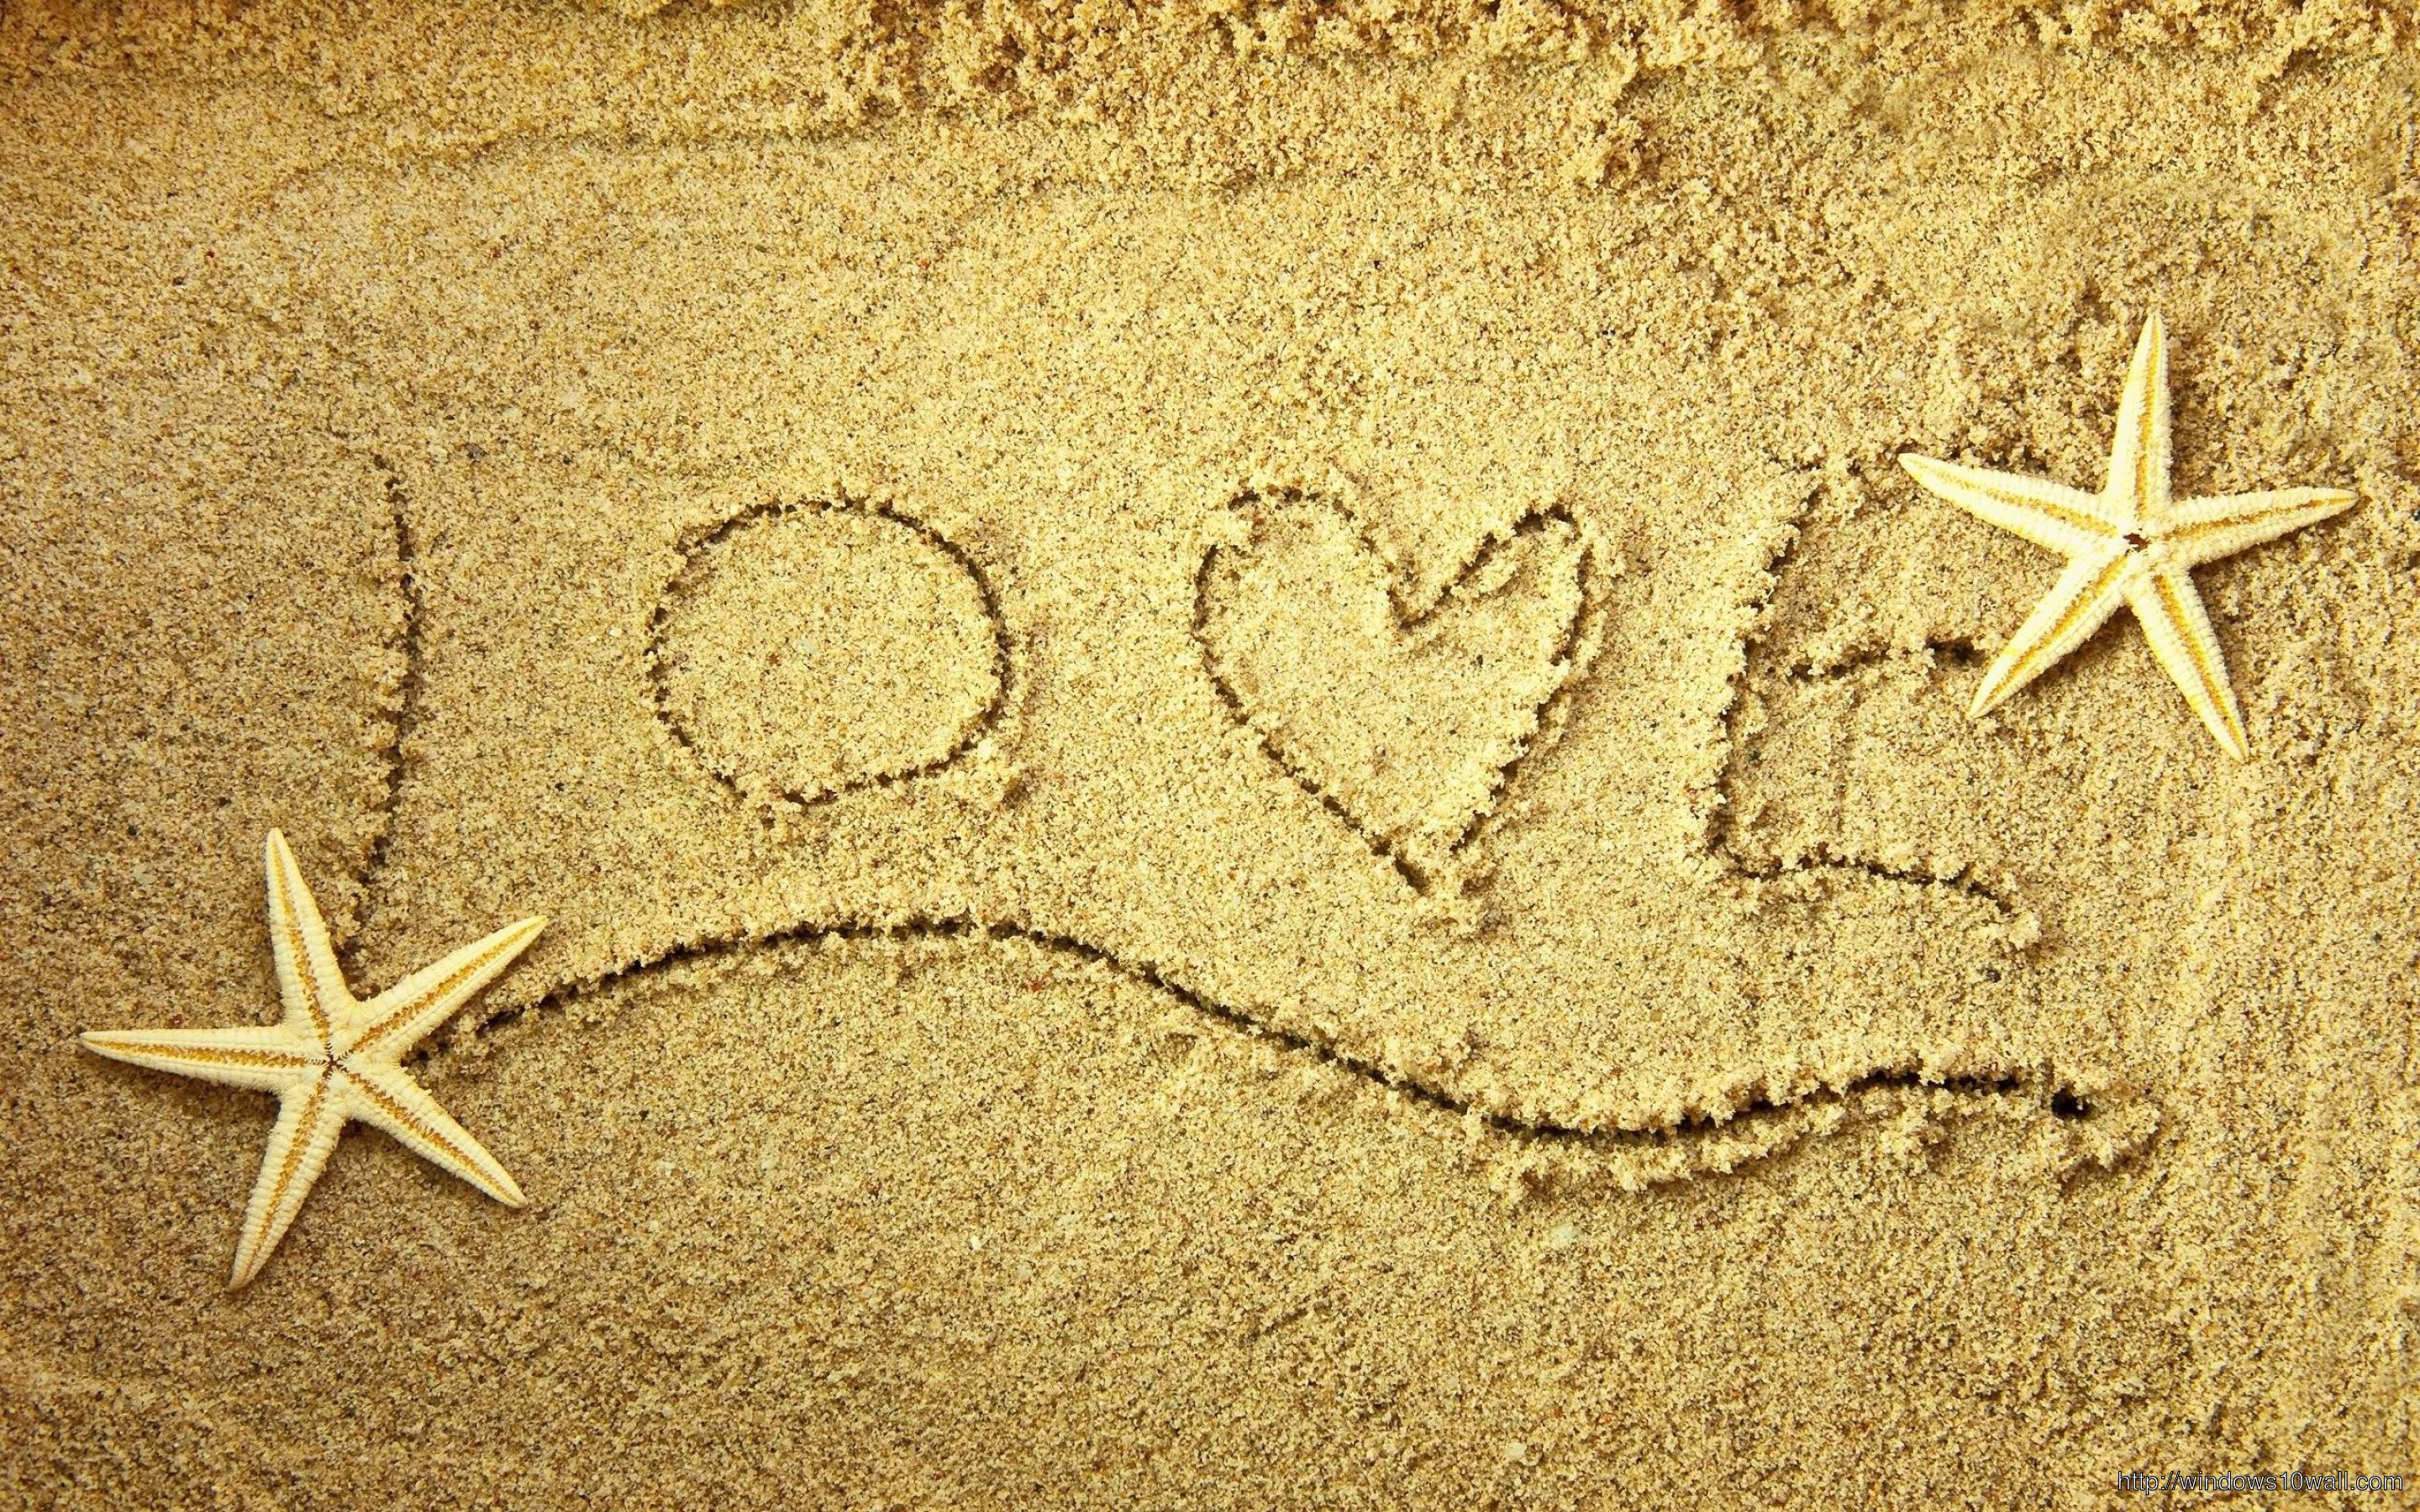 Love Written On Sand